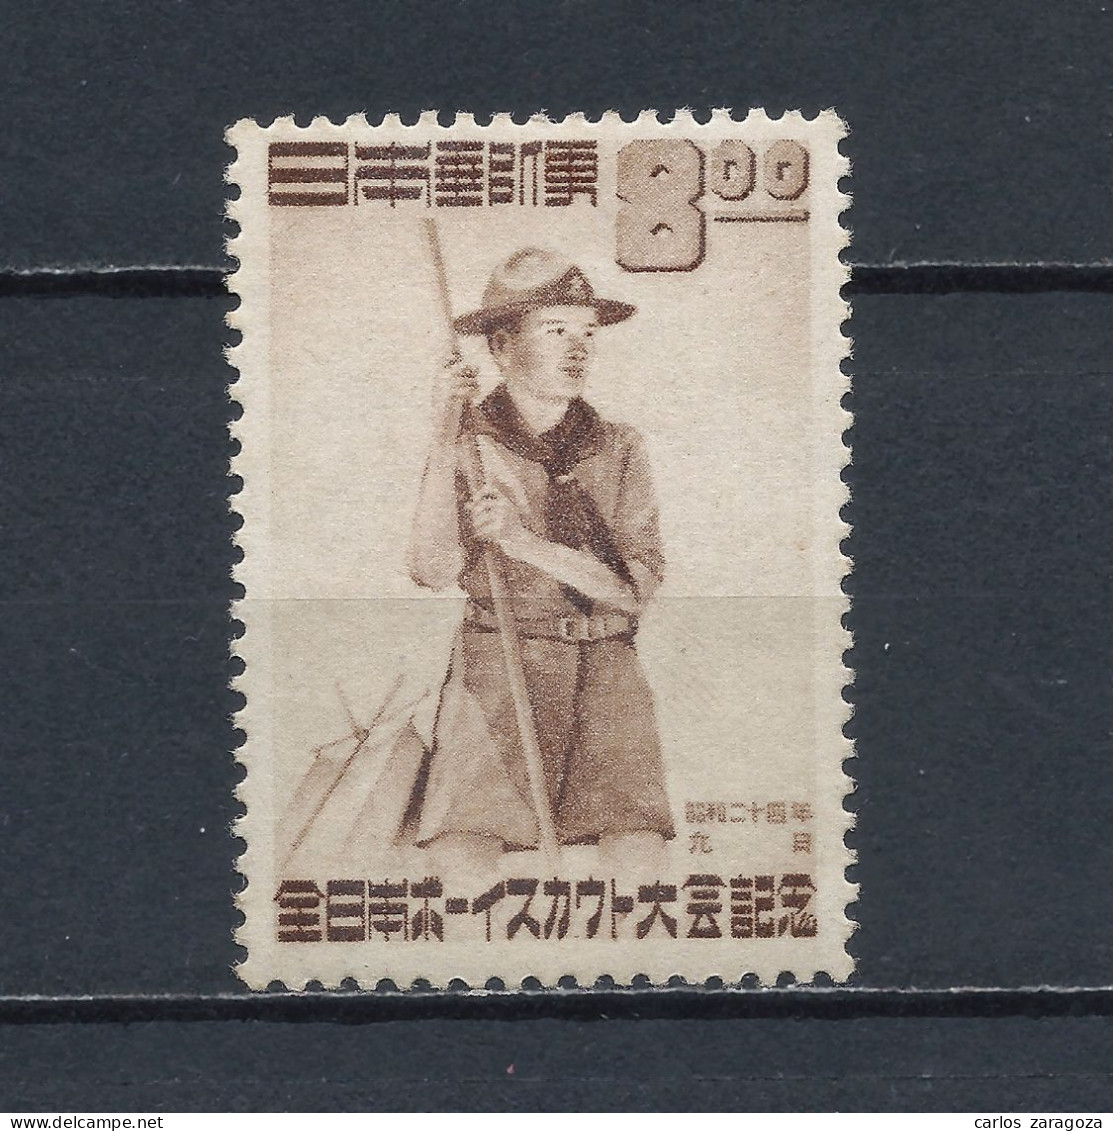 JAPON 1949—SCOUT, JAMBOREE EN TOKIO. 434—SELLO NUEVO (*) MH STAMP 467, TIMBRE NEUF - Neufs